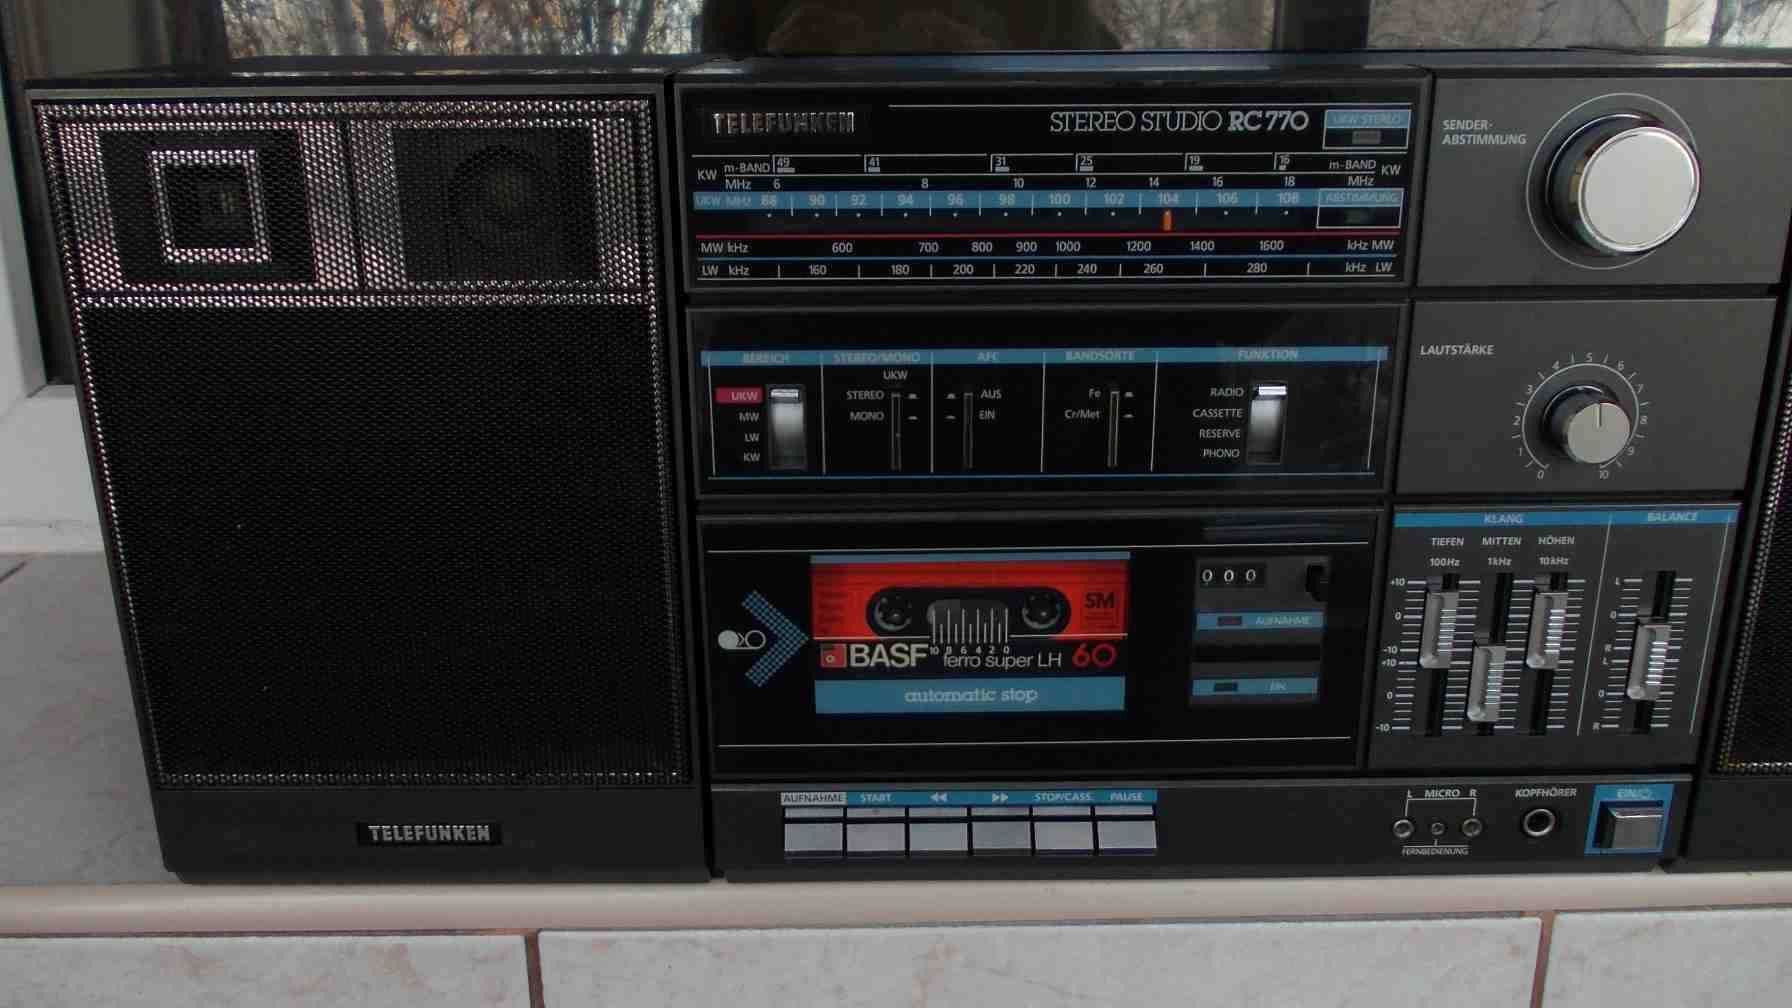 radio SHARP wq-267z Telefunken rc 770 casetofon servisat vintage